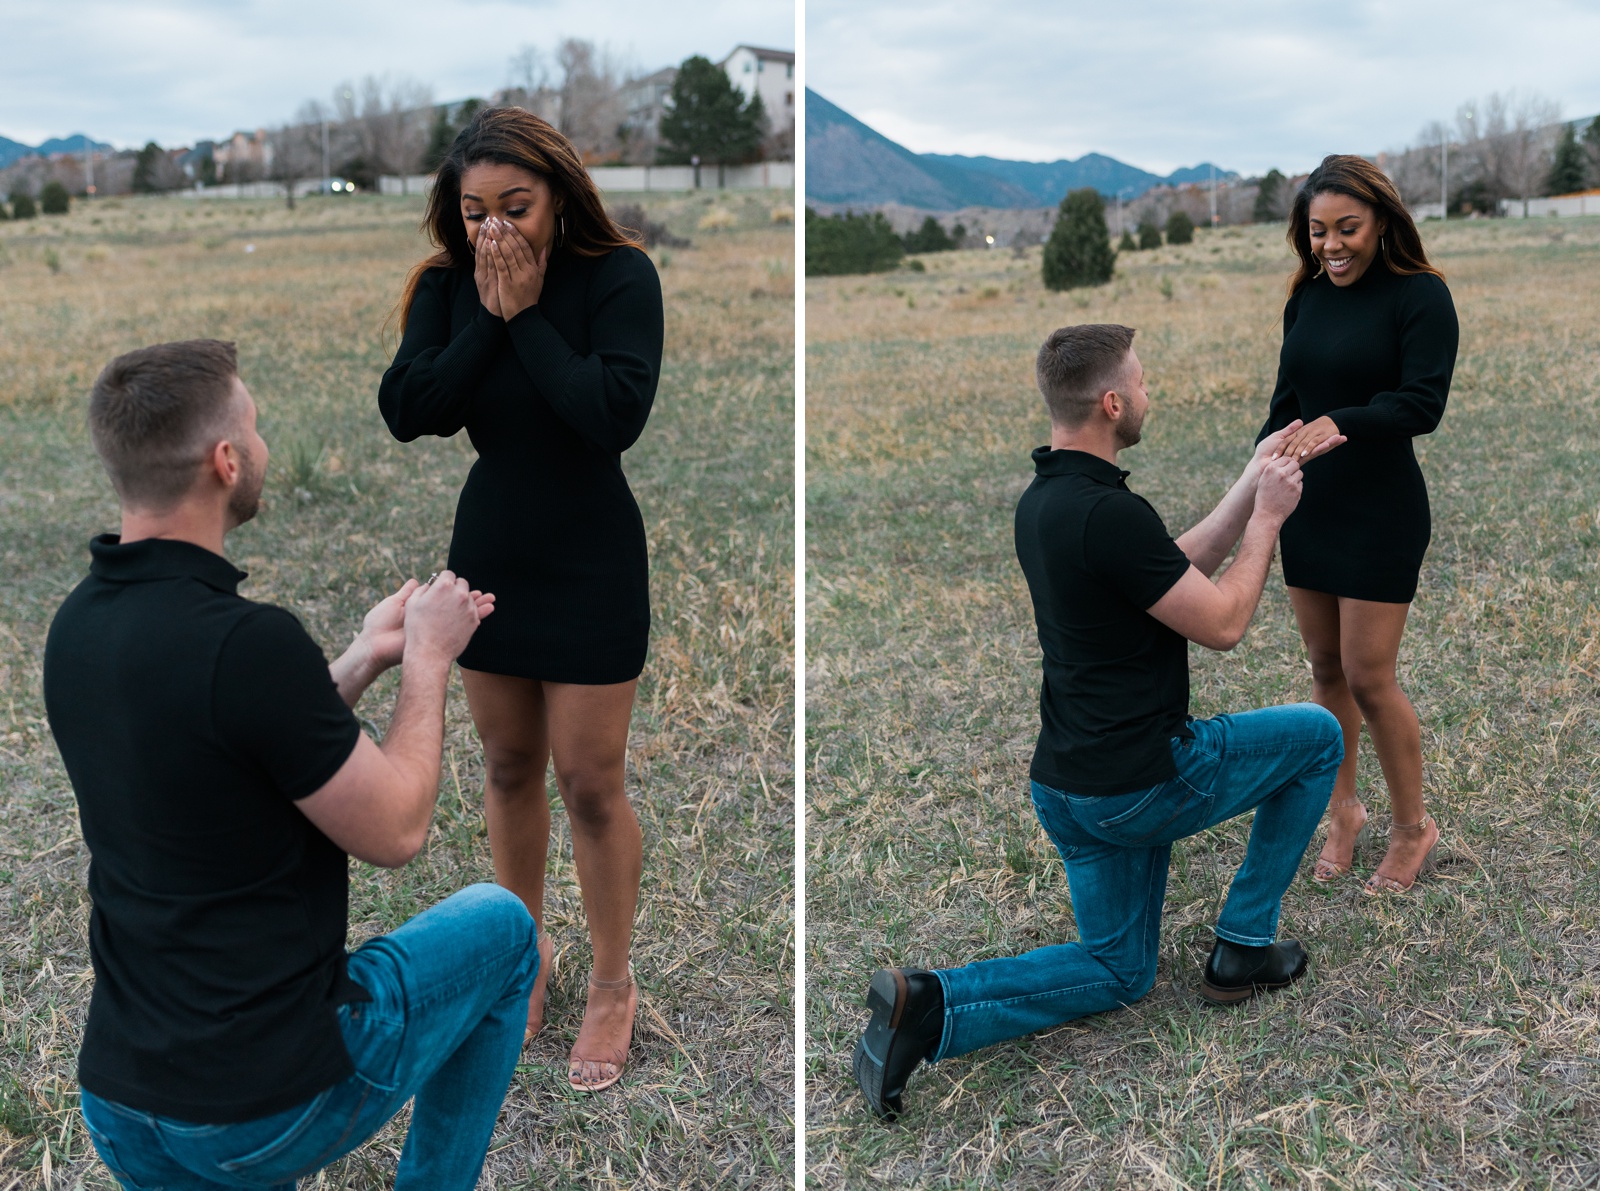 Girl reacting to proposal